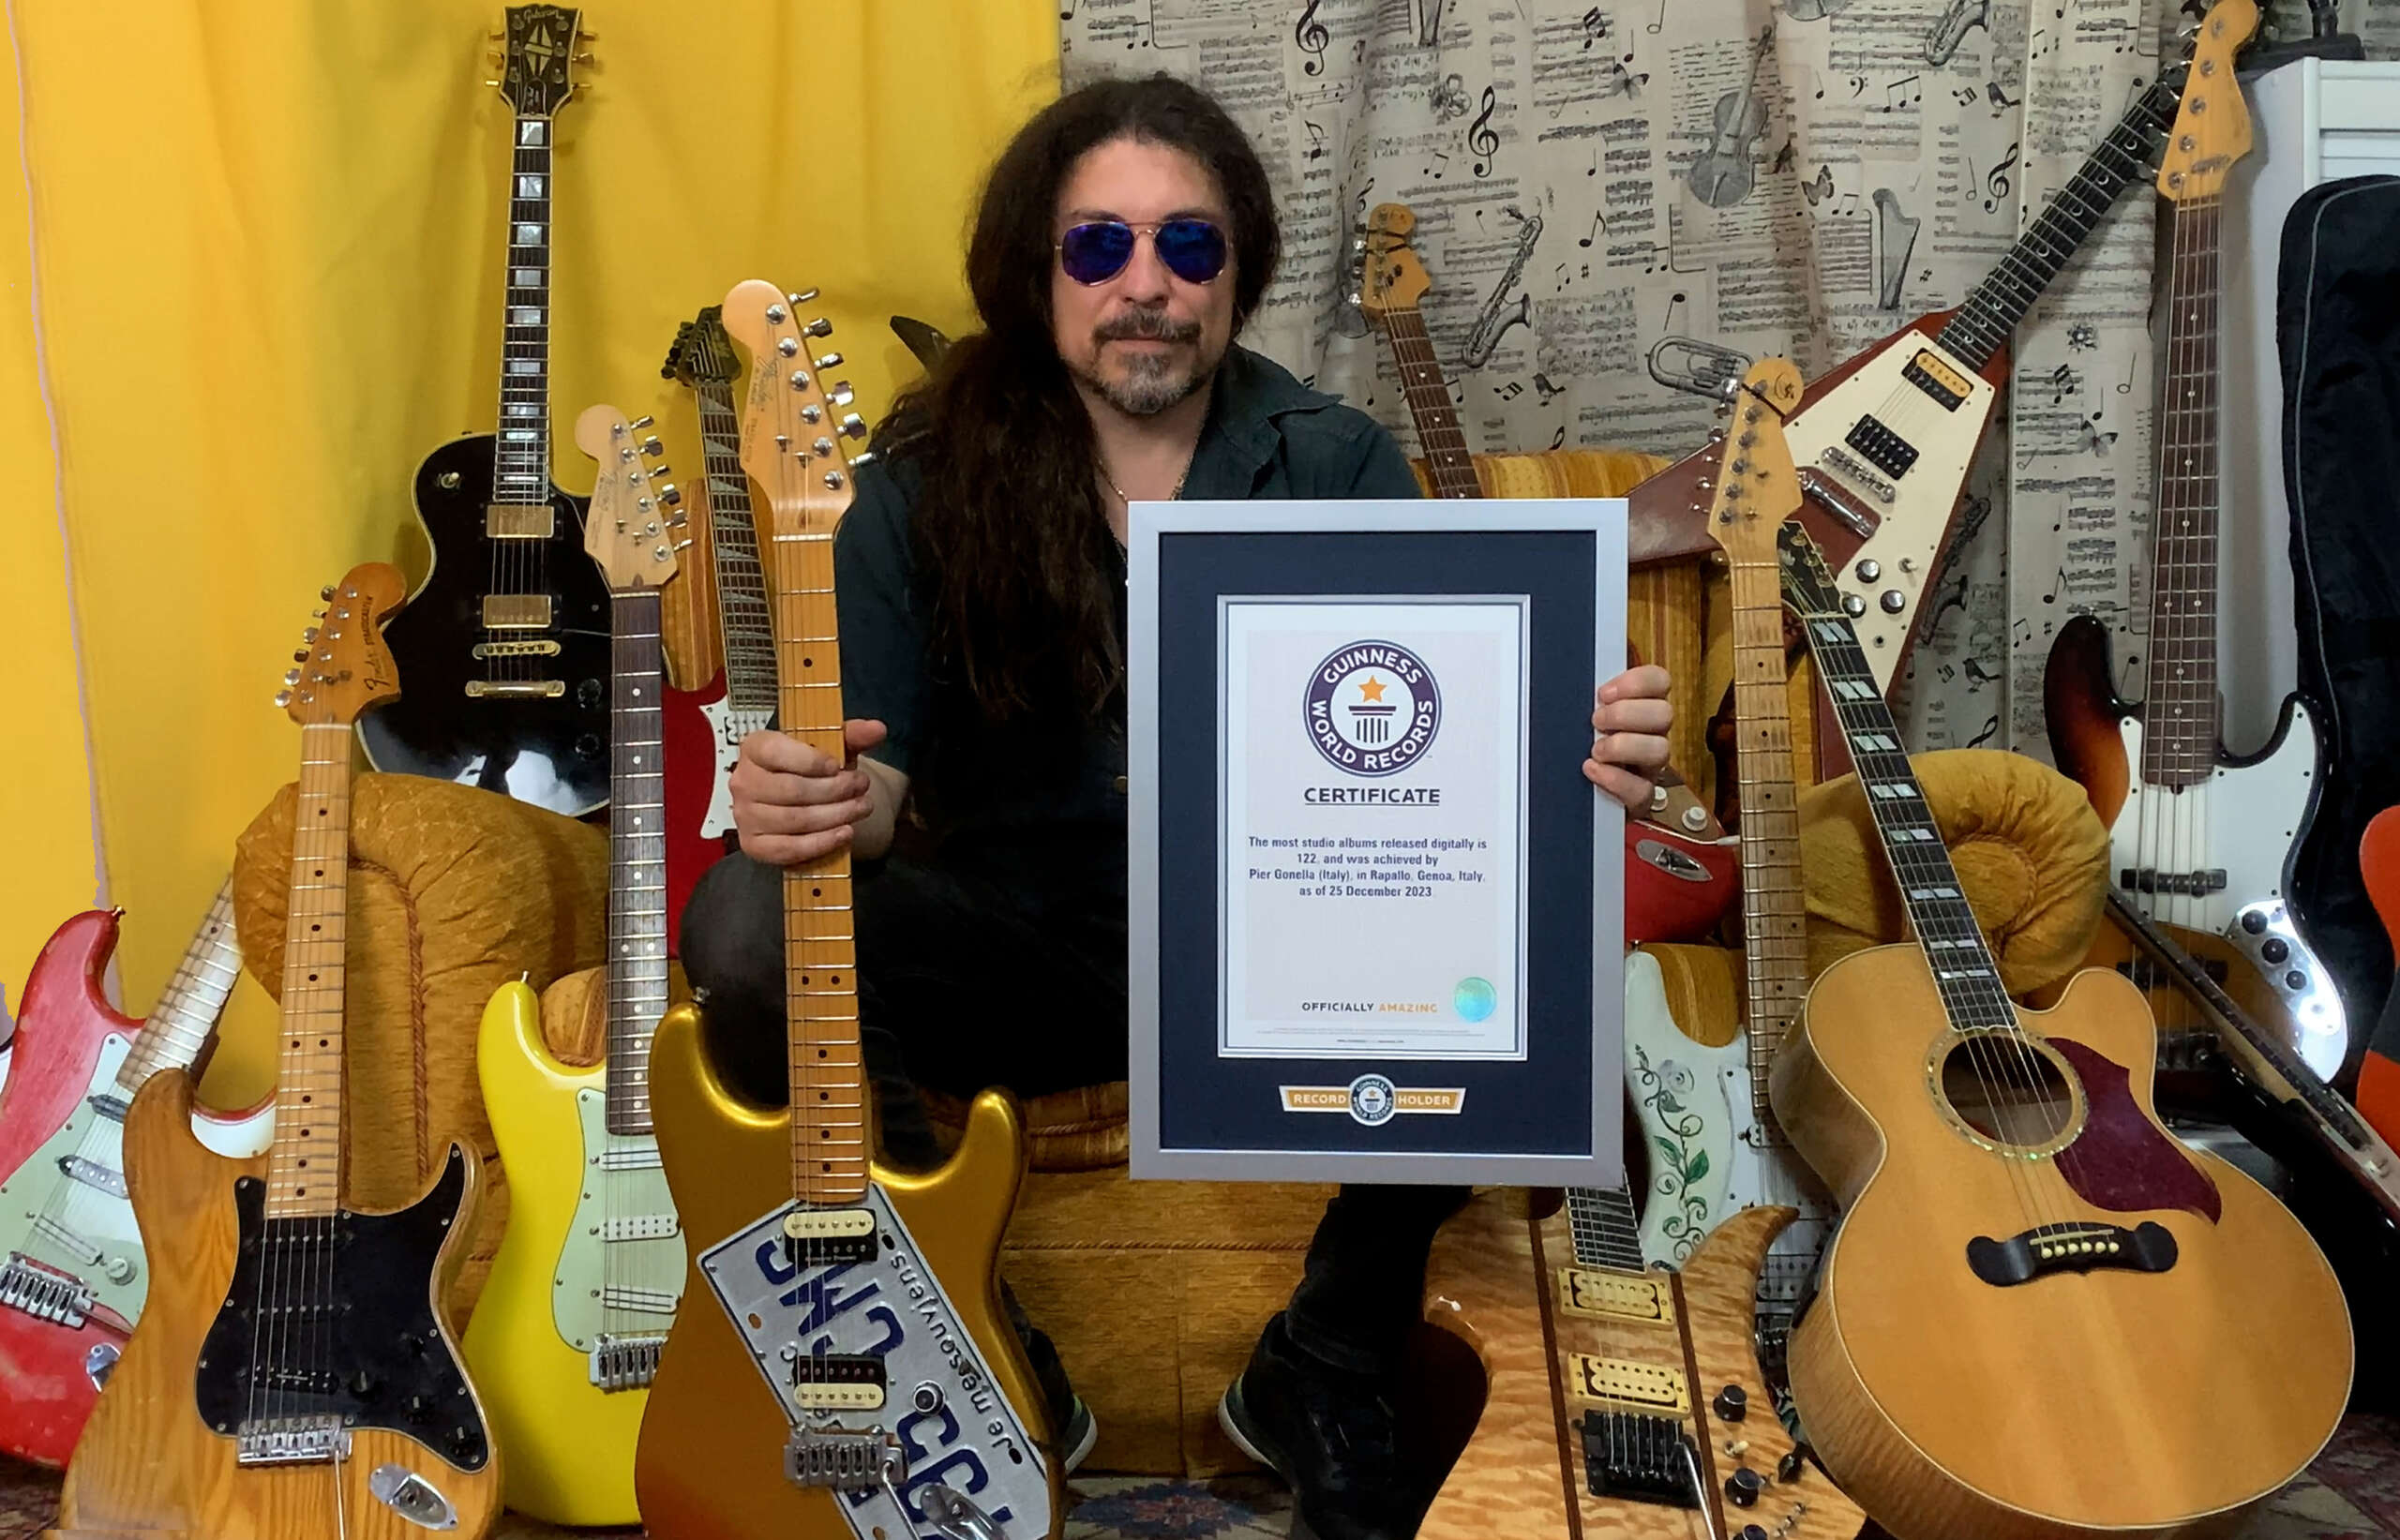 PIER GONELLA (NECRODEATH MASTERCASTLE) – ufficialmente entrato nel “Guinness World Records” per aver pubblicato il maggior numero di album in formato digitale